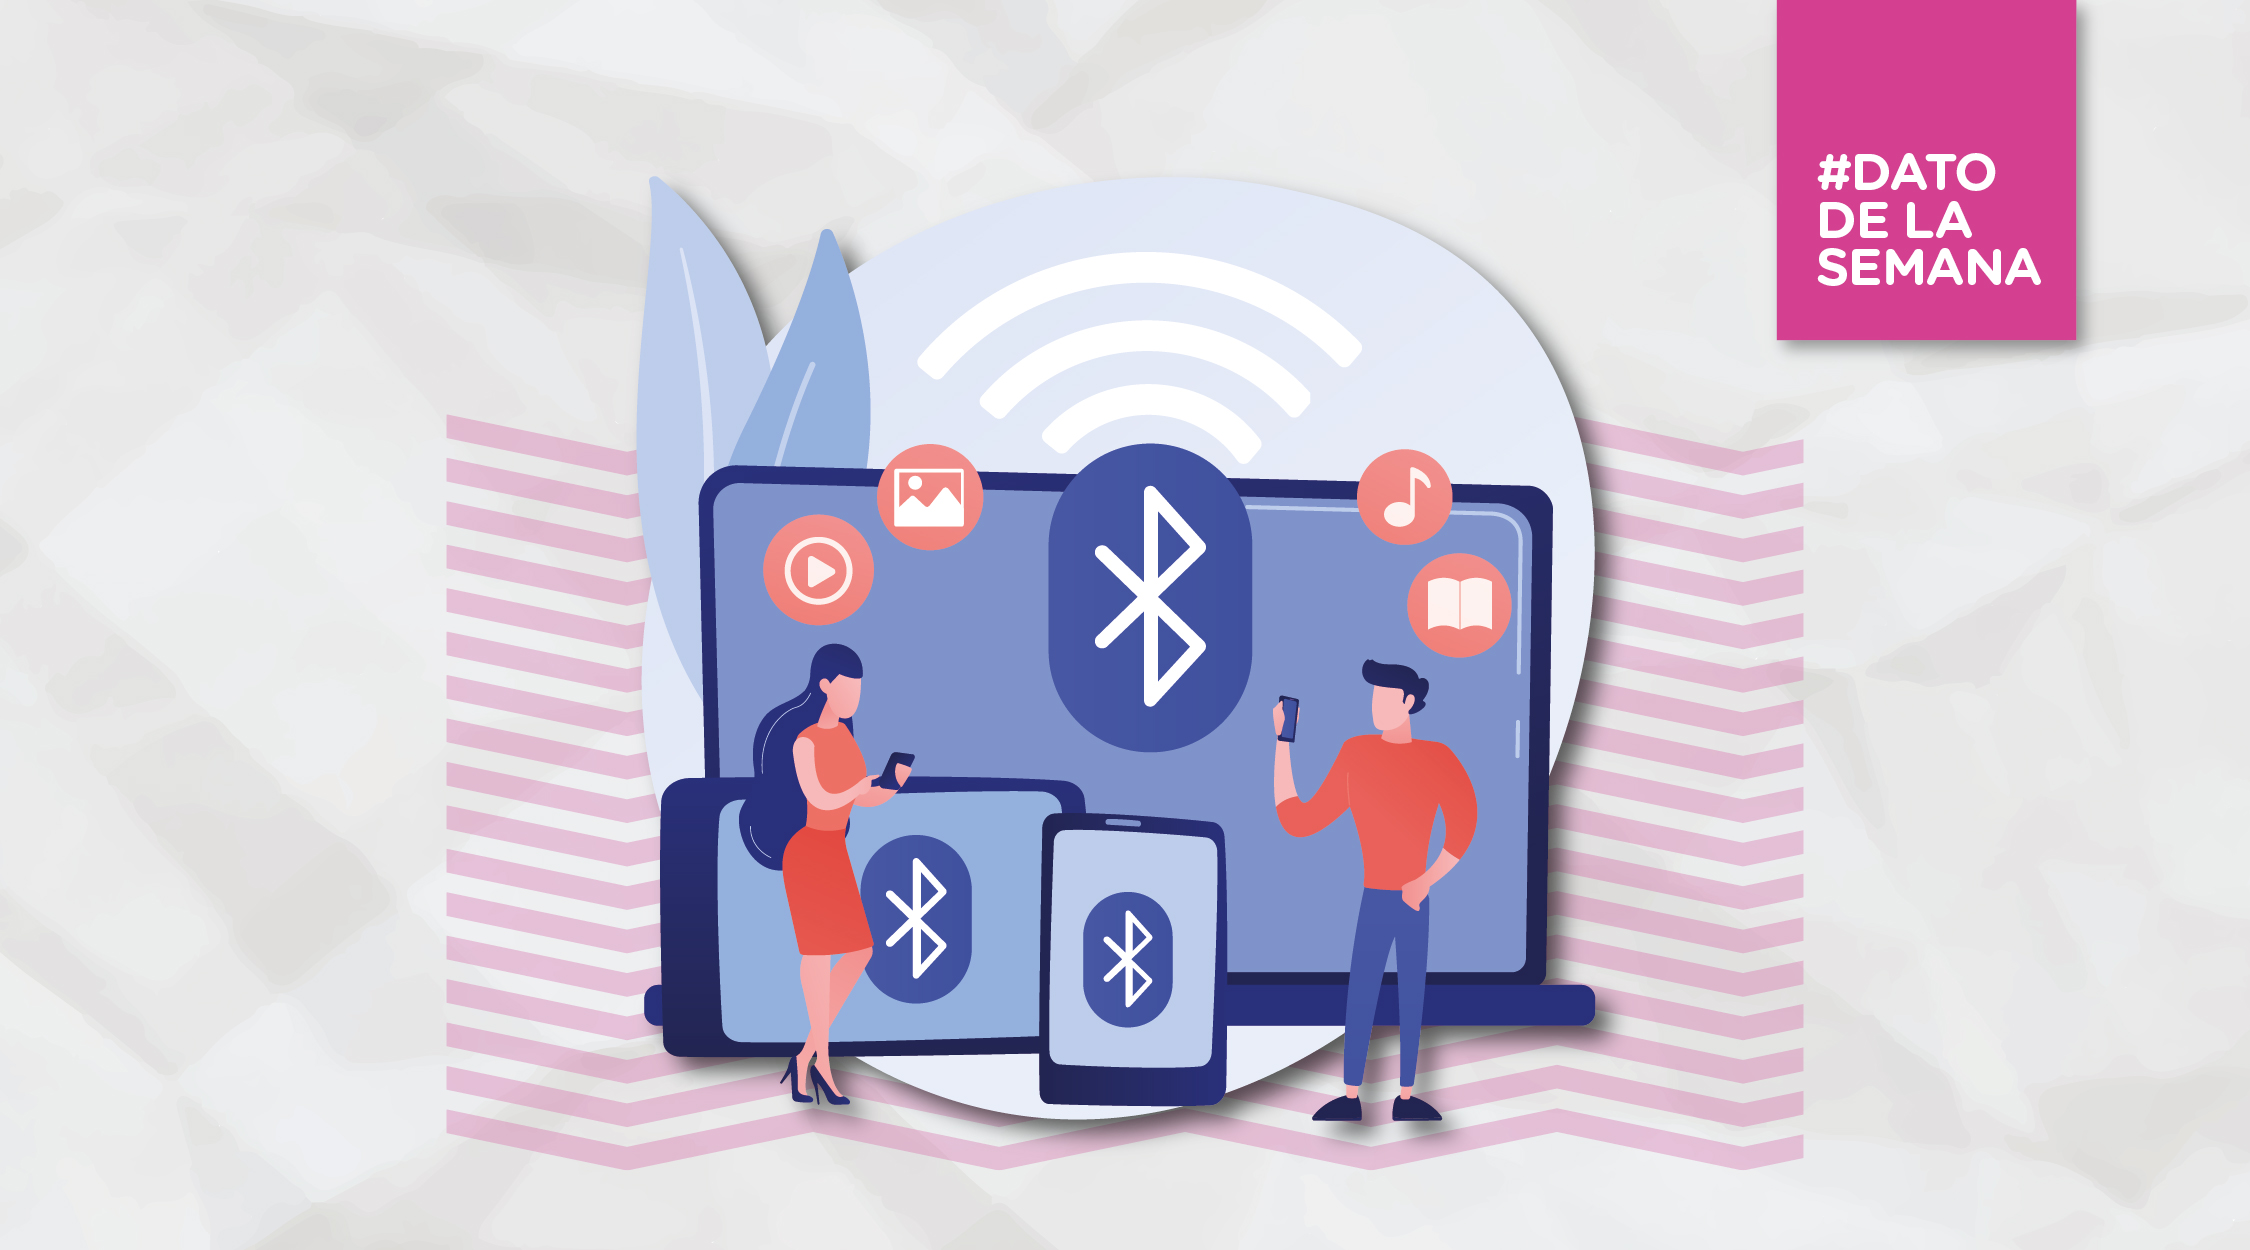 Bluetooth: “nuevo dispositivo conectado” 